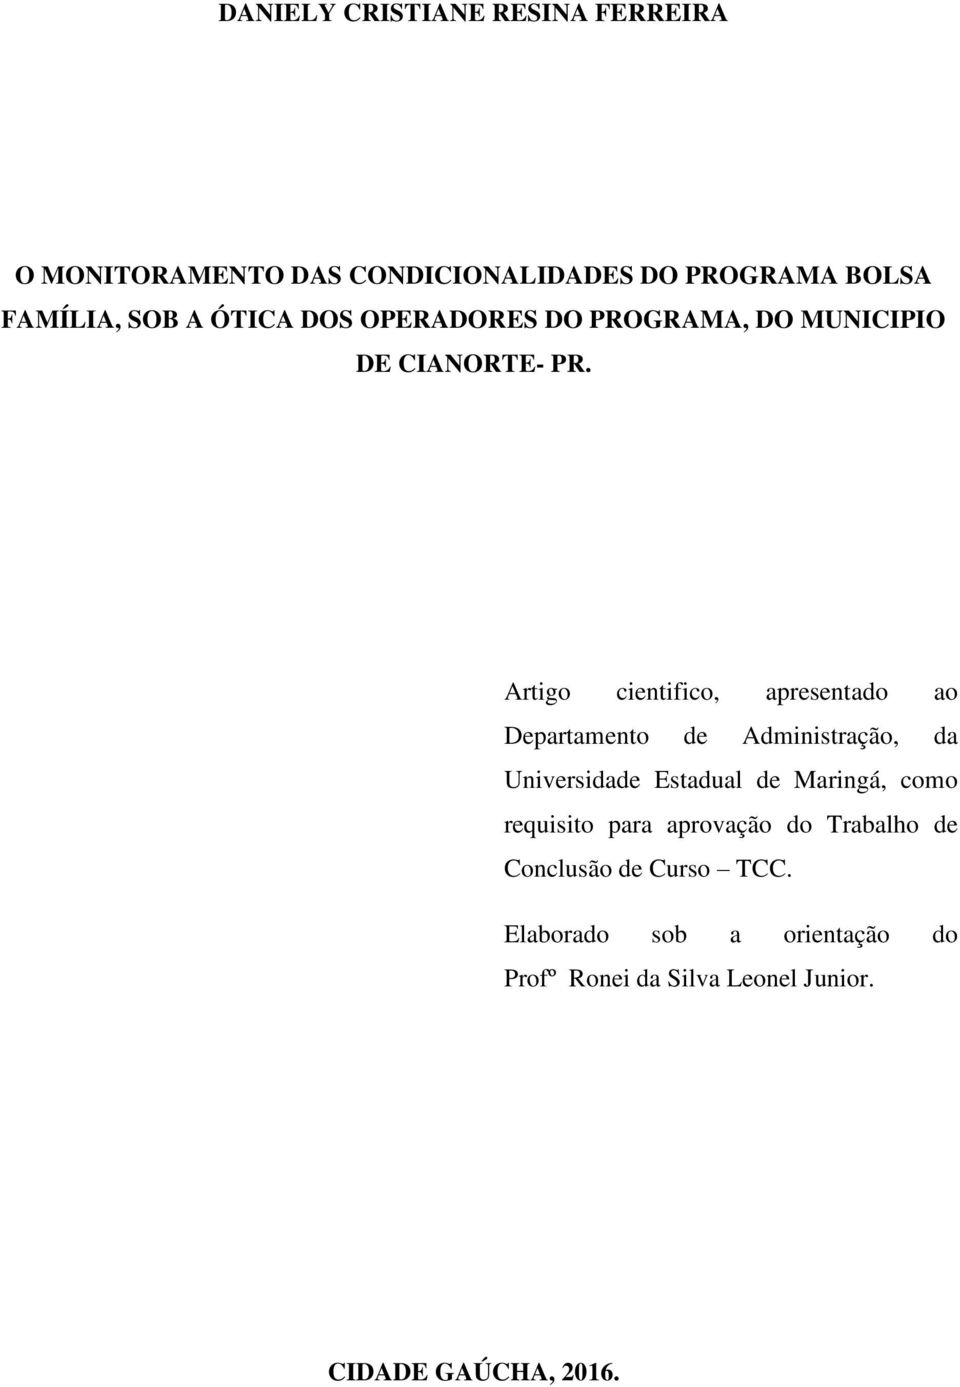 Artigo cientifico, apresentado ao Departamento de Administração, da Universidade Estadual de Maringá, como